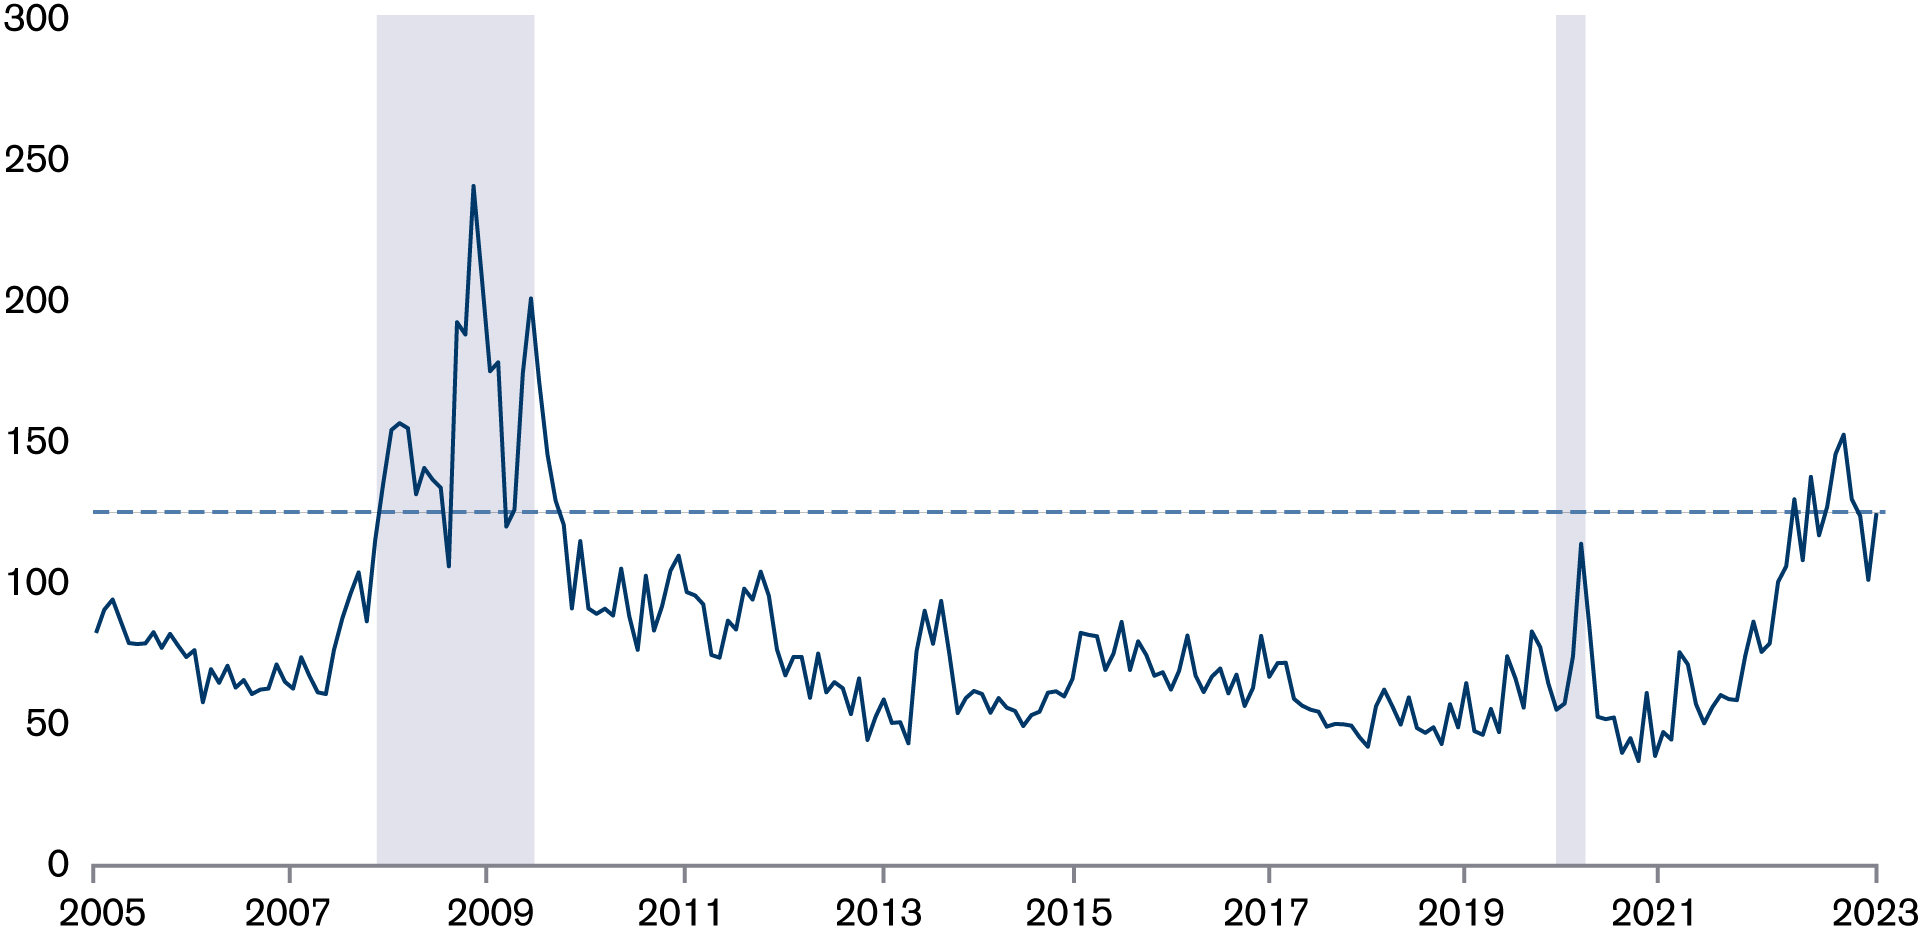 Serie temporale della volatilità dei tassi d’interesse dal 2005 al 2022.